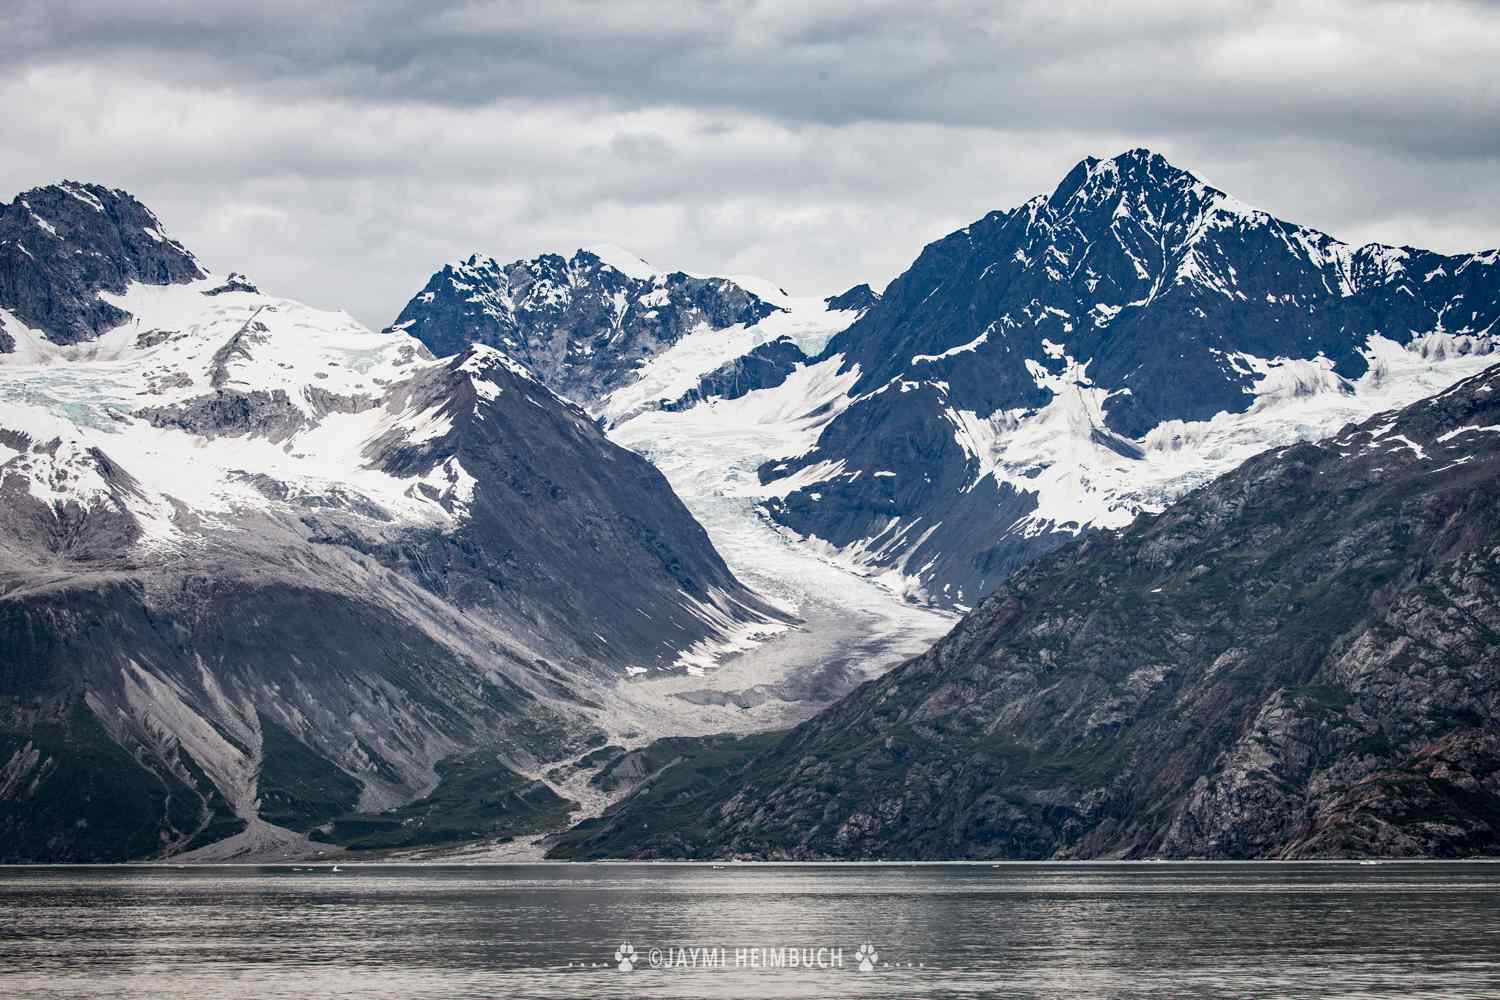 Un glaciar de valle sigue la dirección de un valle de paredes escarpadas, raspando lentamente las laderas de las montañas a medida que se desplaza